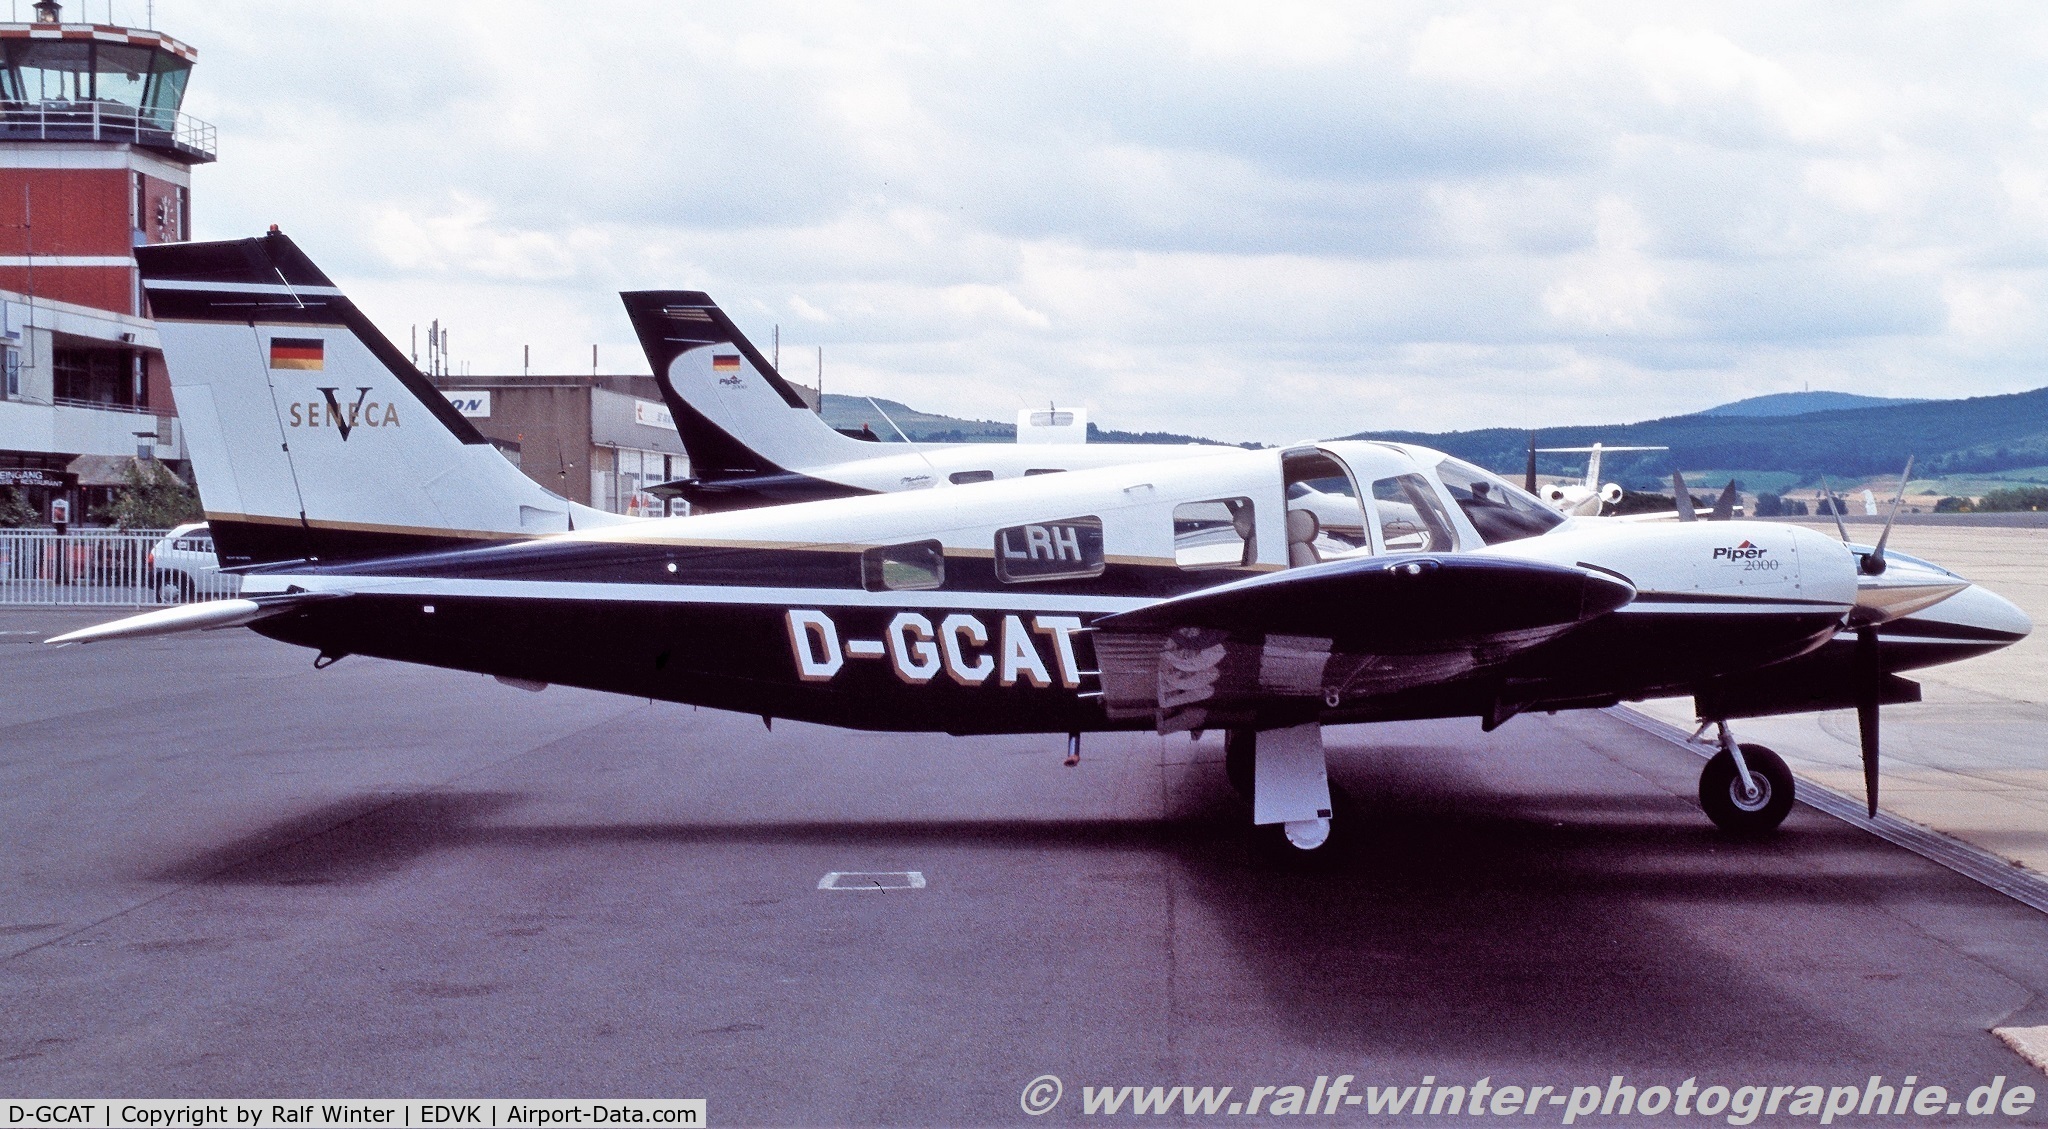 D-GCAT, Piper PA-34-220T Seneca V C/N 3449167, Piper PA-34-220T Seneca V - Private - 3449167 - D-GCAT - 1996 - EDVK